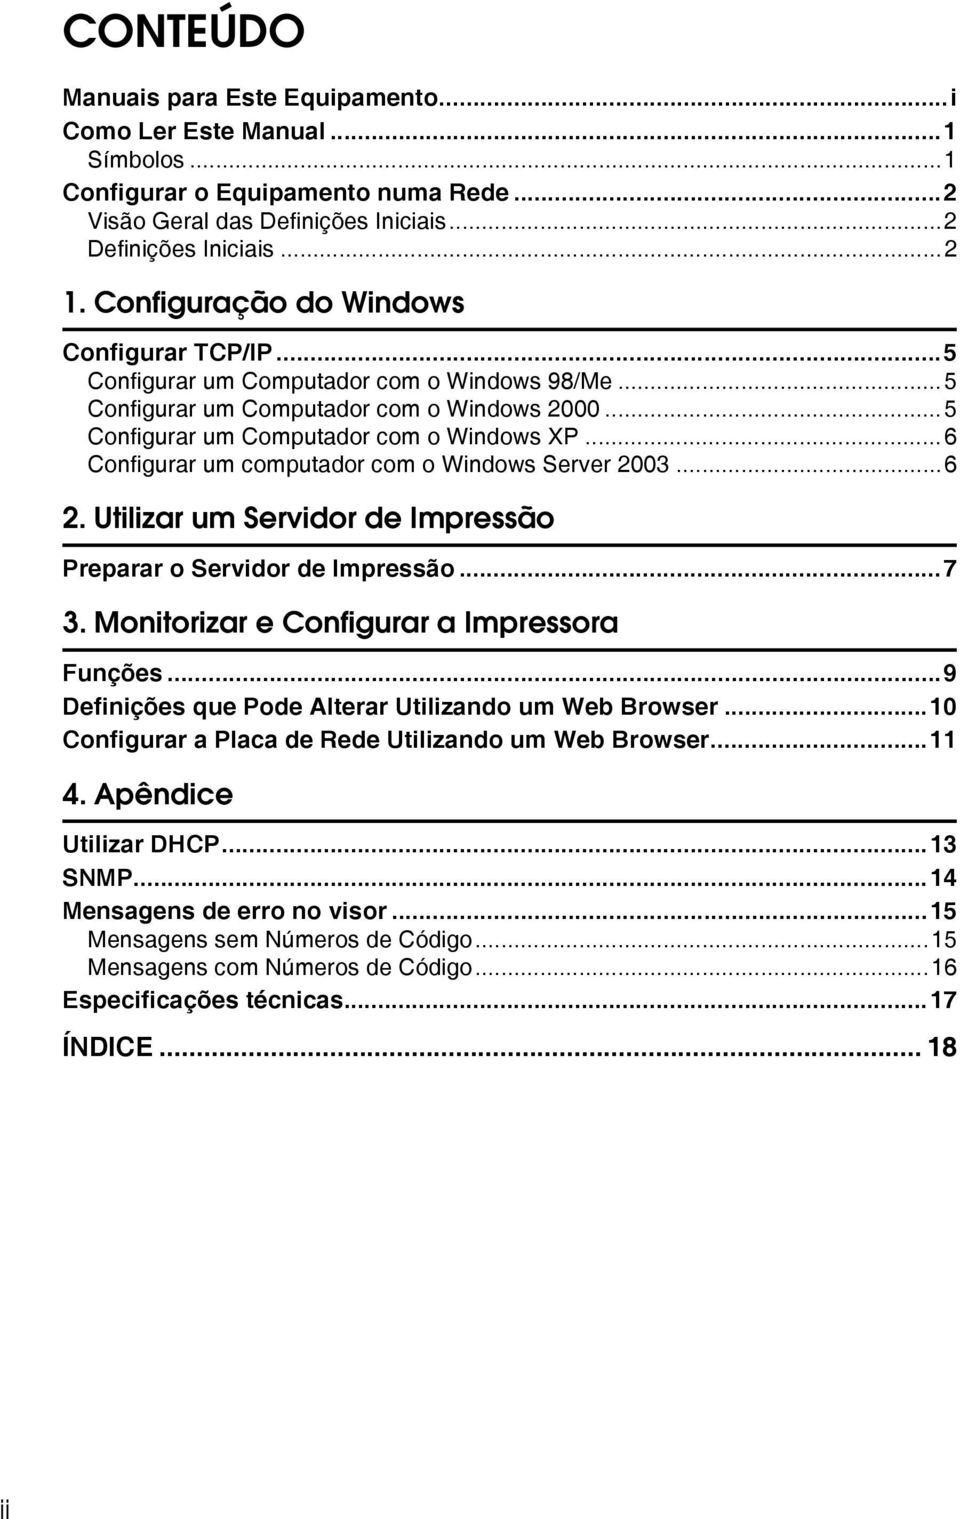 ..6 Configurar um computador com o Windows Server 2003...6 2. Utilizar um Servidor de Impressão Preparar o Servidor de Impressão...7 3. Monitorizar e Configurar a Impressora Funções.